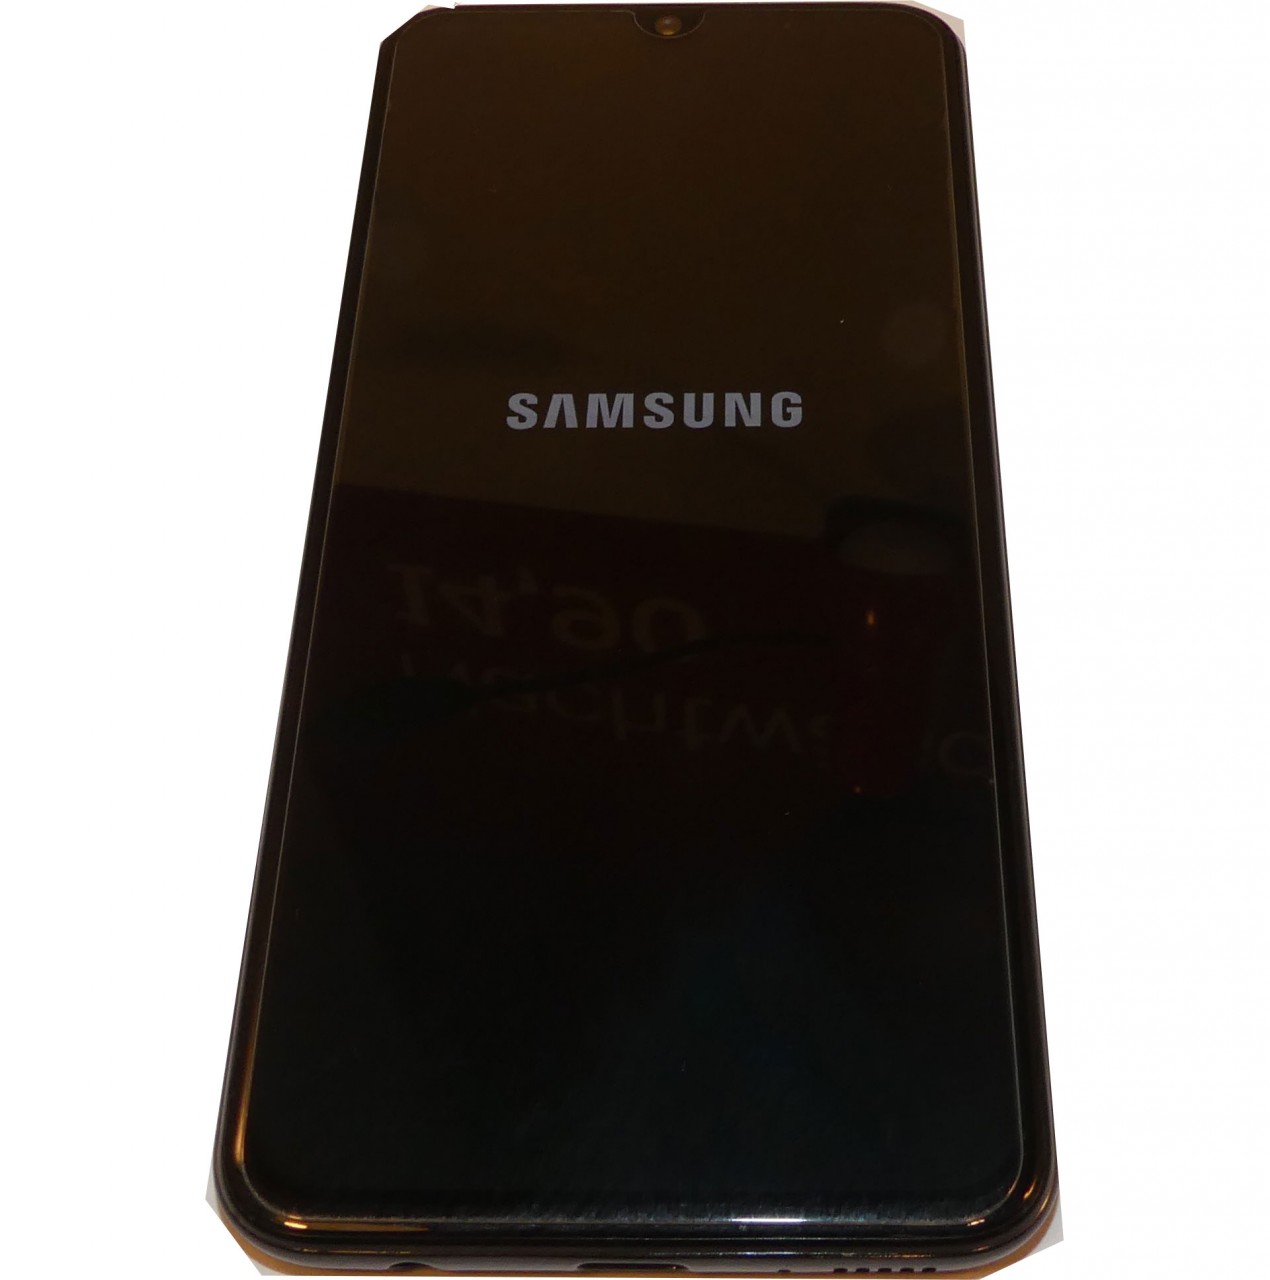 Samsung Galaxy 0 Duos 05fn Ds 64 Gb Smartphone Gebraucht Smartphone Smartphone Handy Ankauf Leipzig